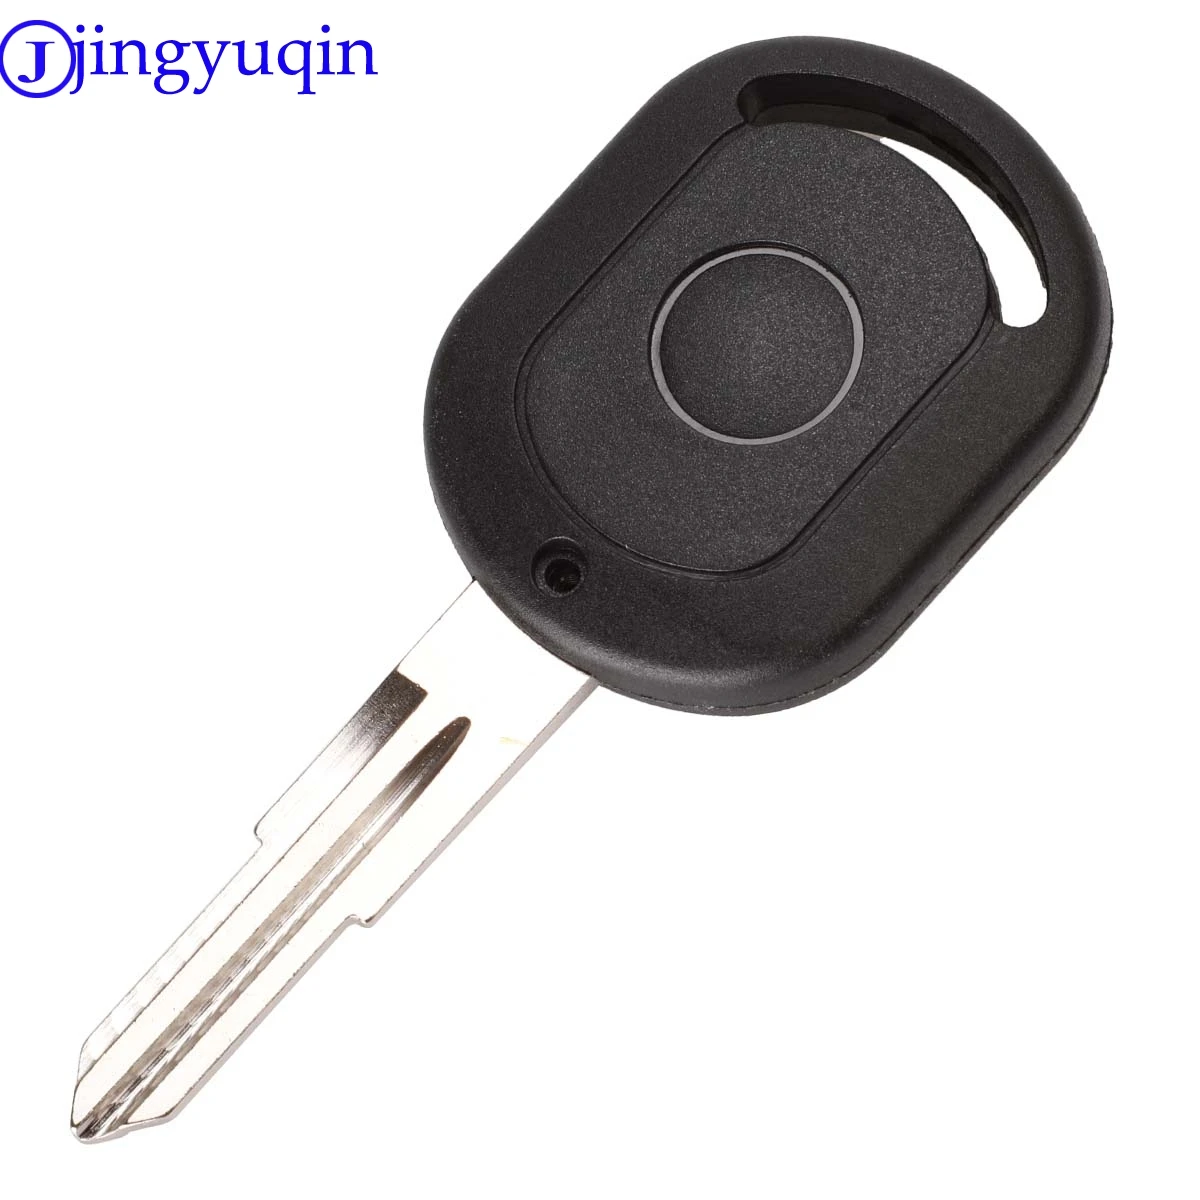 Jingyuqin пульт дистанционного ключа оболочки чехол для Buick 2003-2005 Excelle HRV для Chevrolet автомобиля брелок нерезанное лезвие Fob